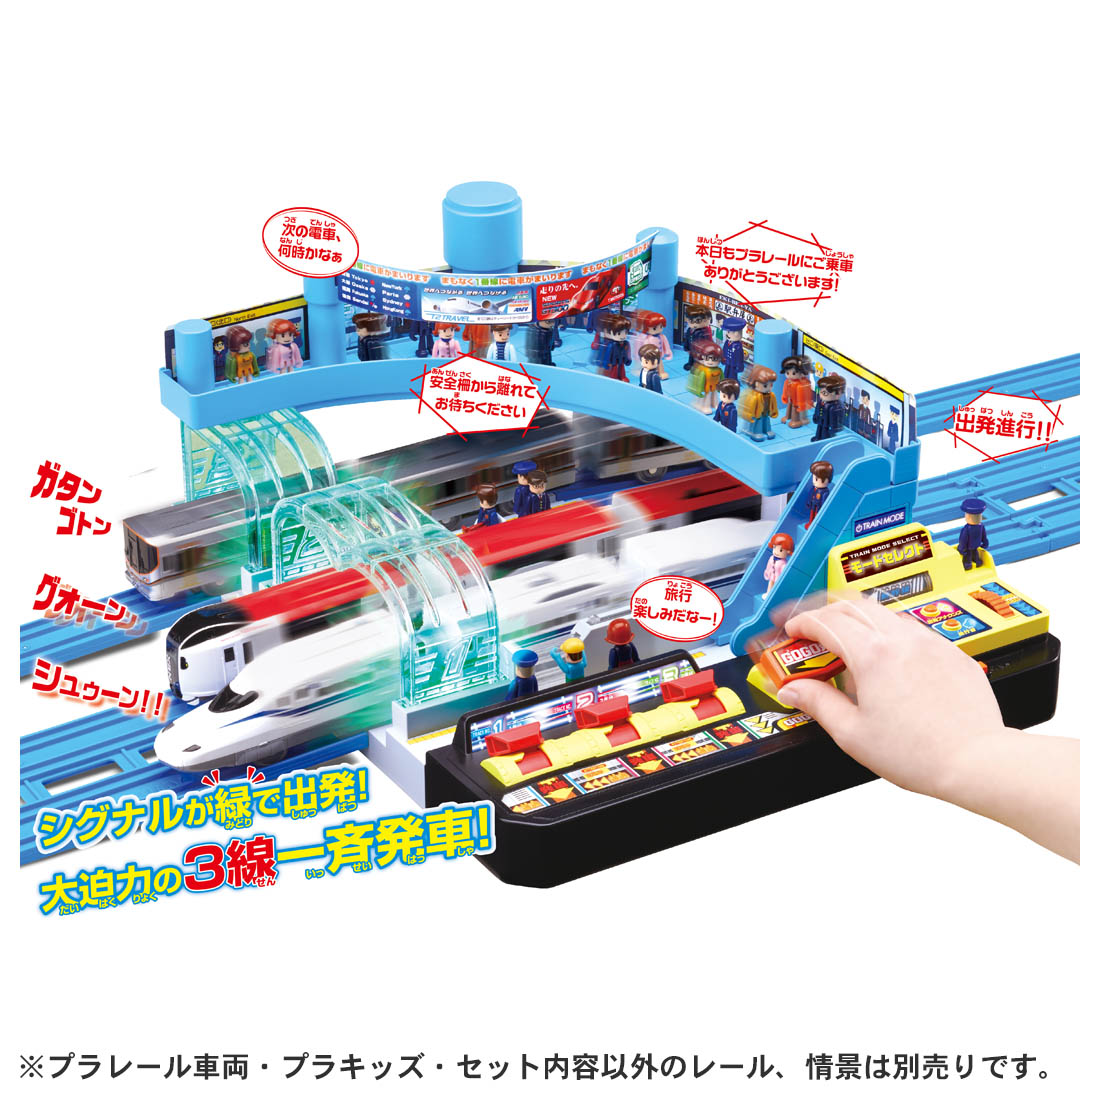 タカラトミー 154693 ピカッとシグナル!GOGO発車ステーション | 鉄道模型・プラモデル・ラジコン・ガン・ミリタリー・フィギュア・ミニカー  玩具(おもちゃ) の通販サイト